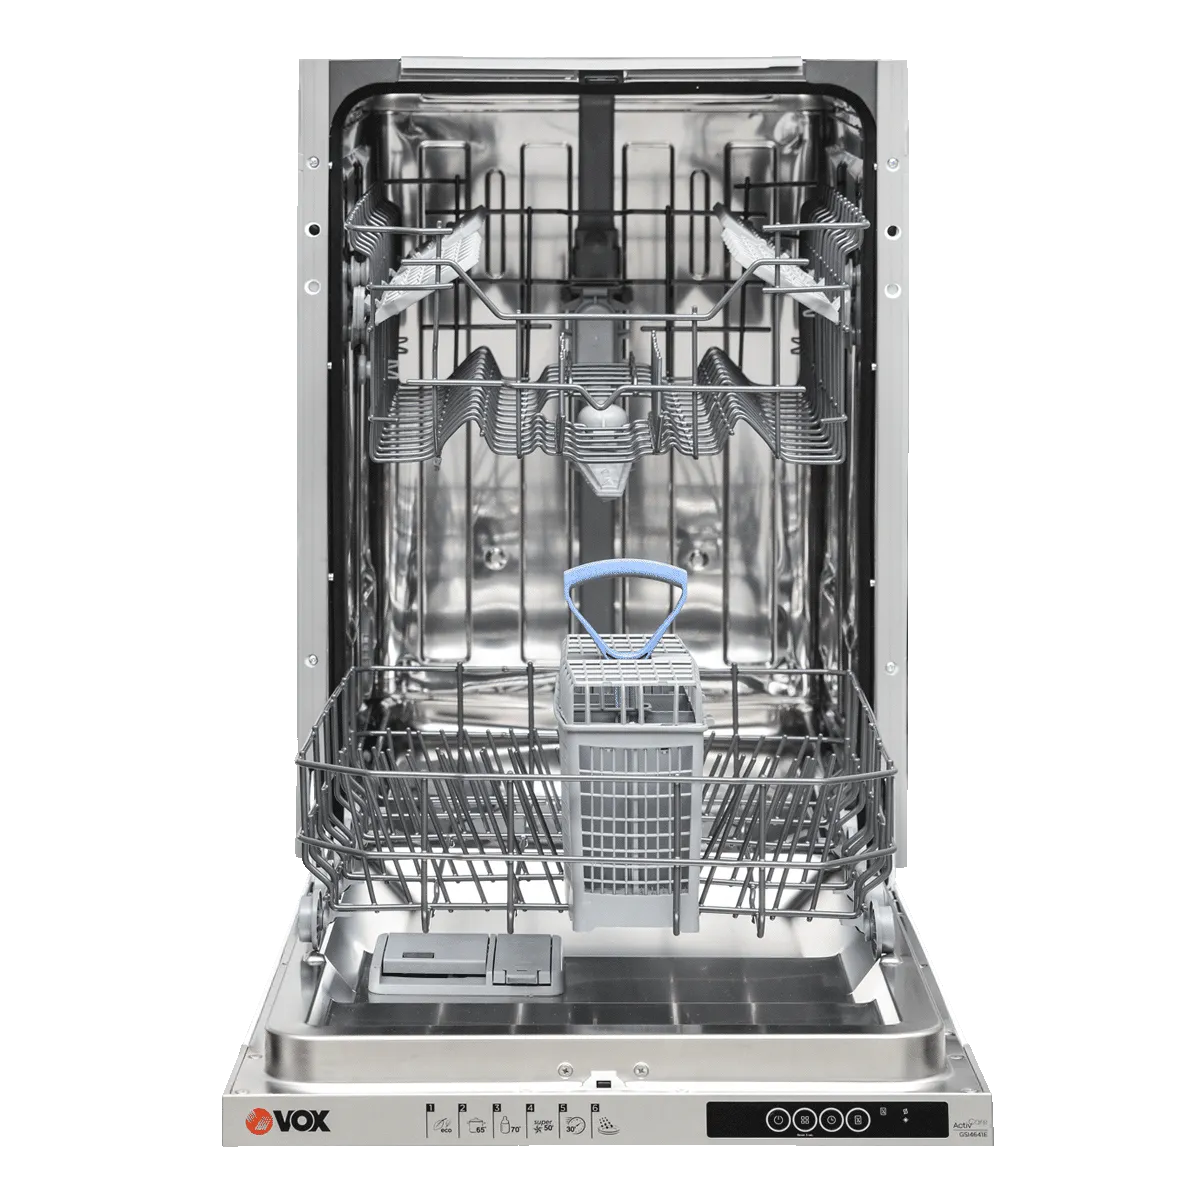 Built-in dishwasher GSI 4641 E 